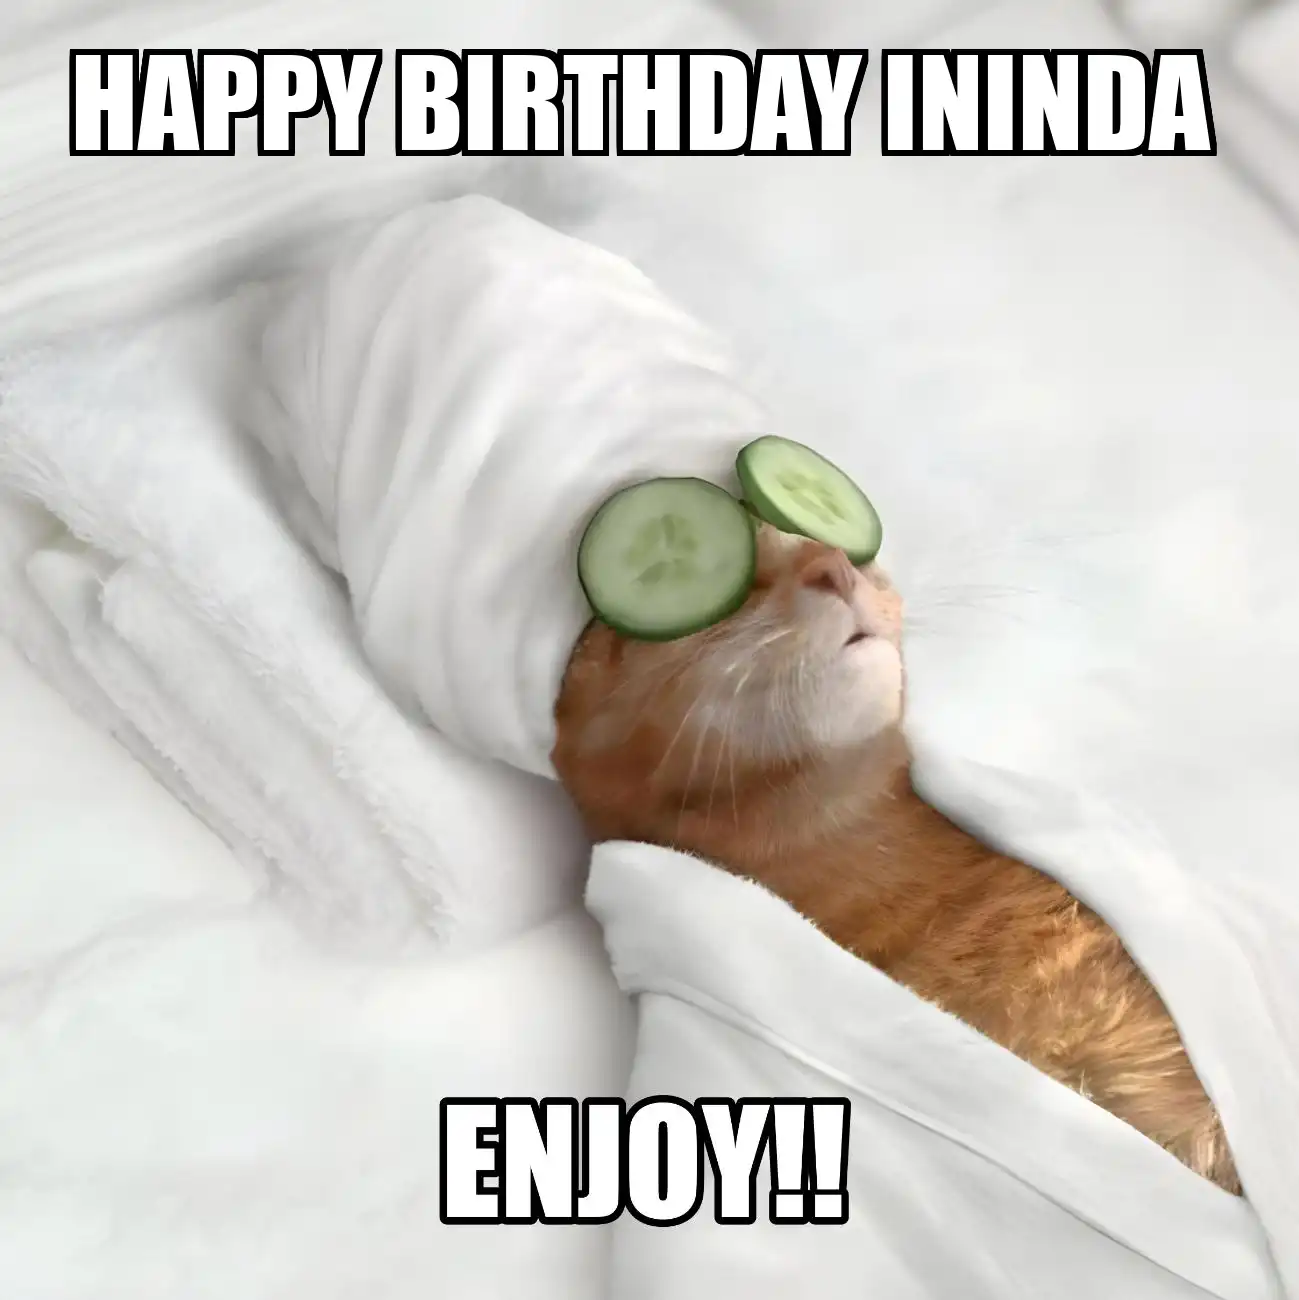 Happy Birthday Ininda Enjoy Cat Meme